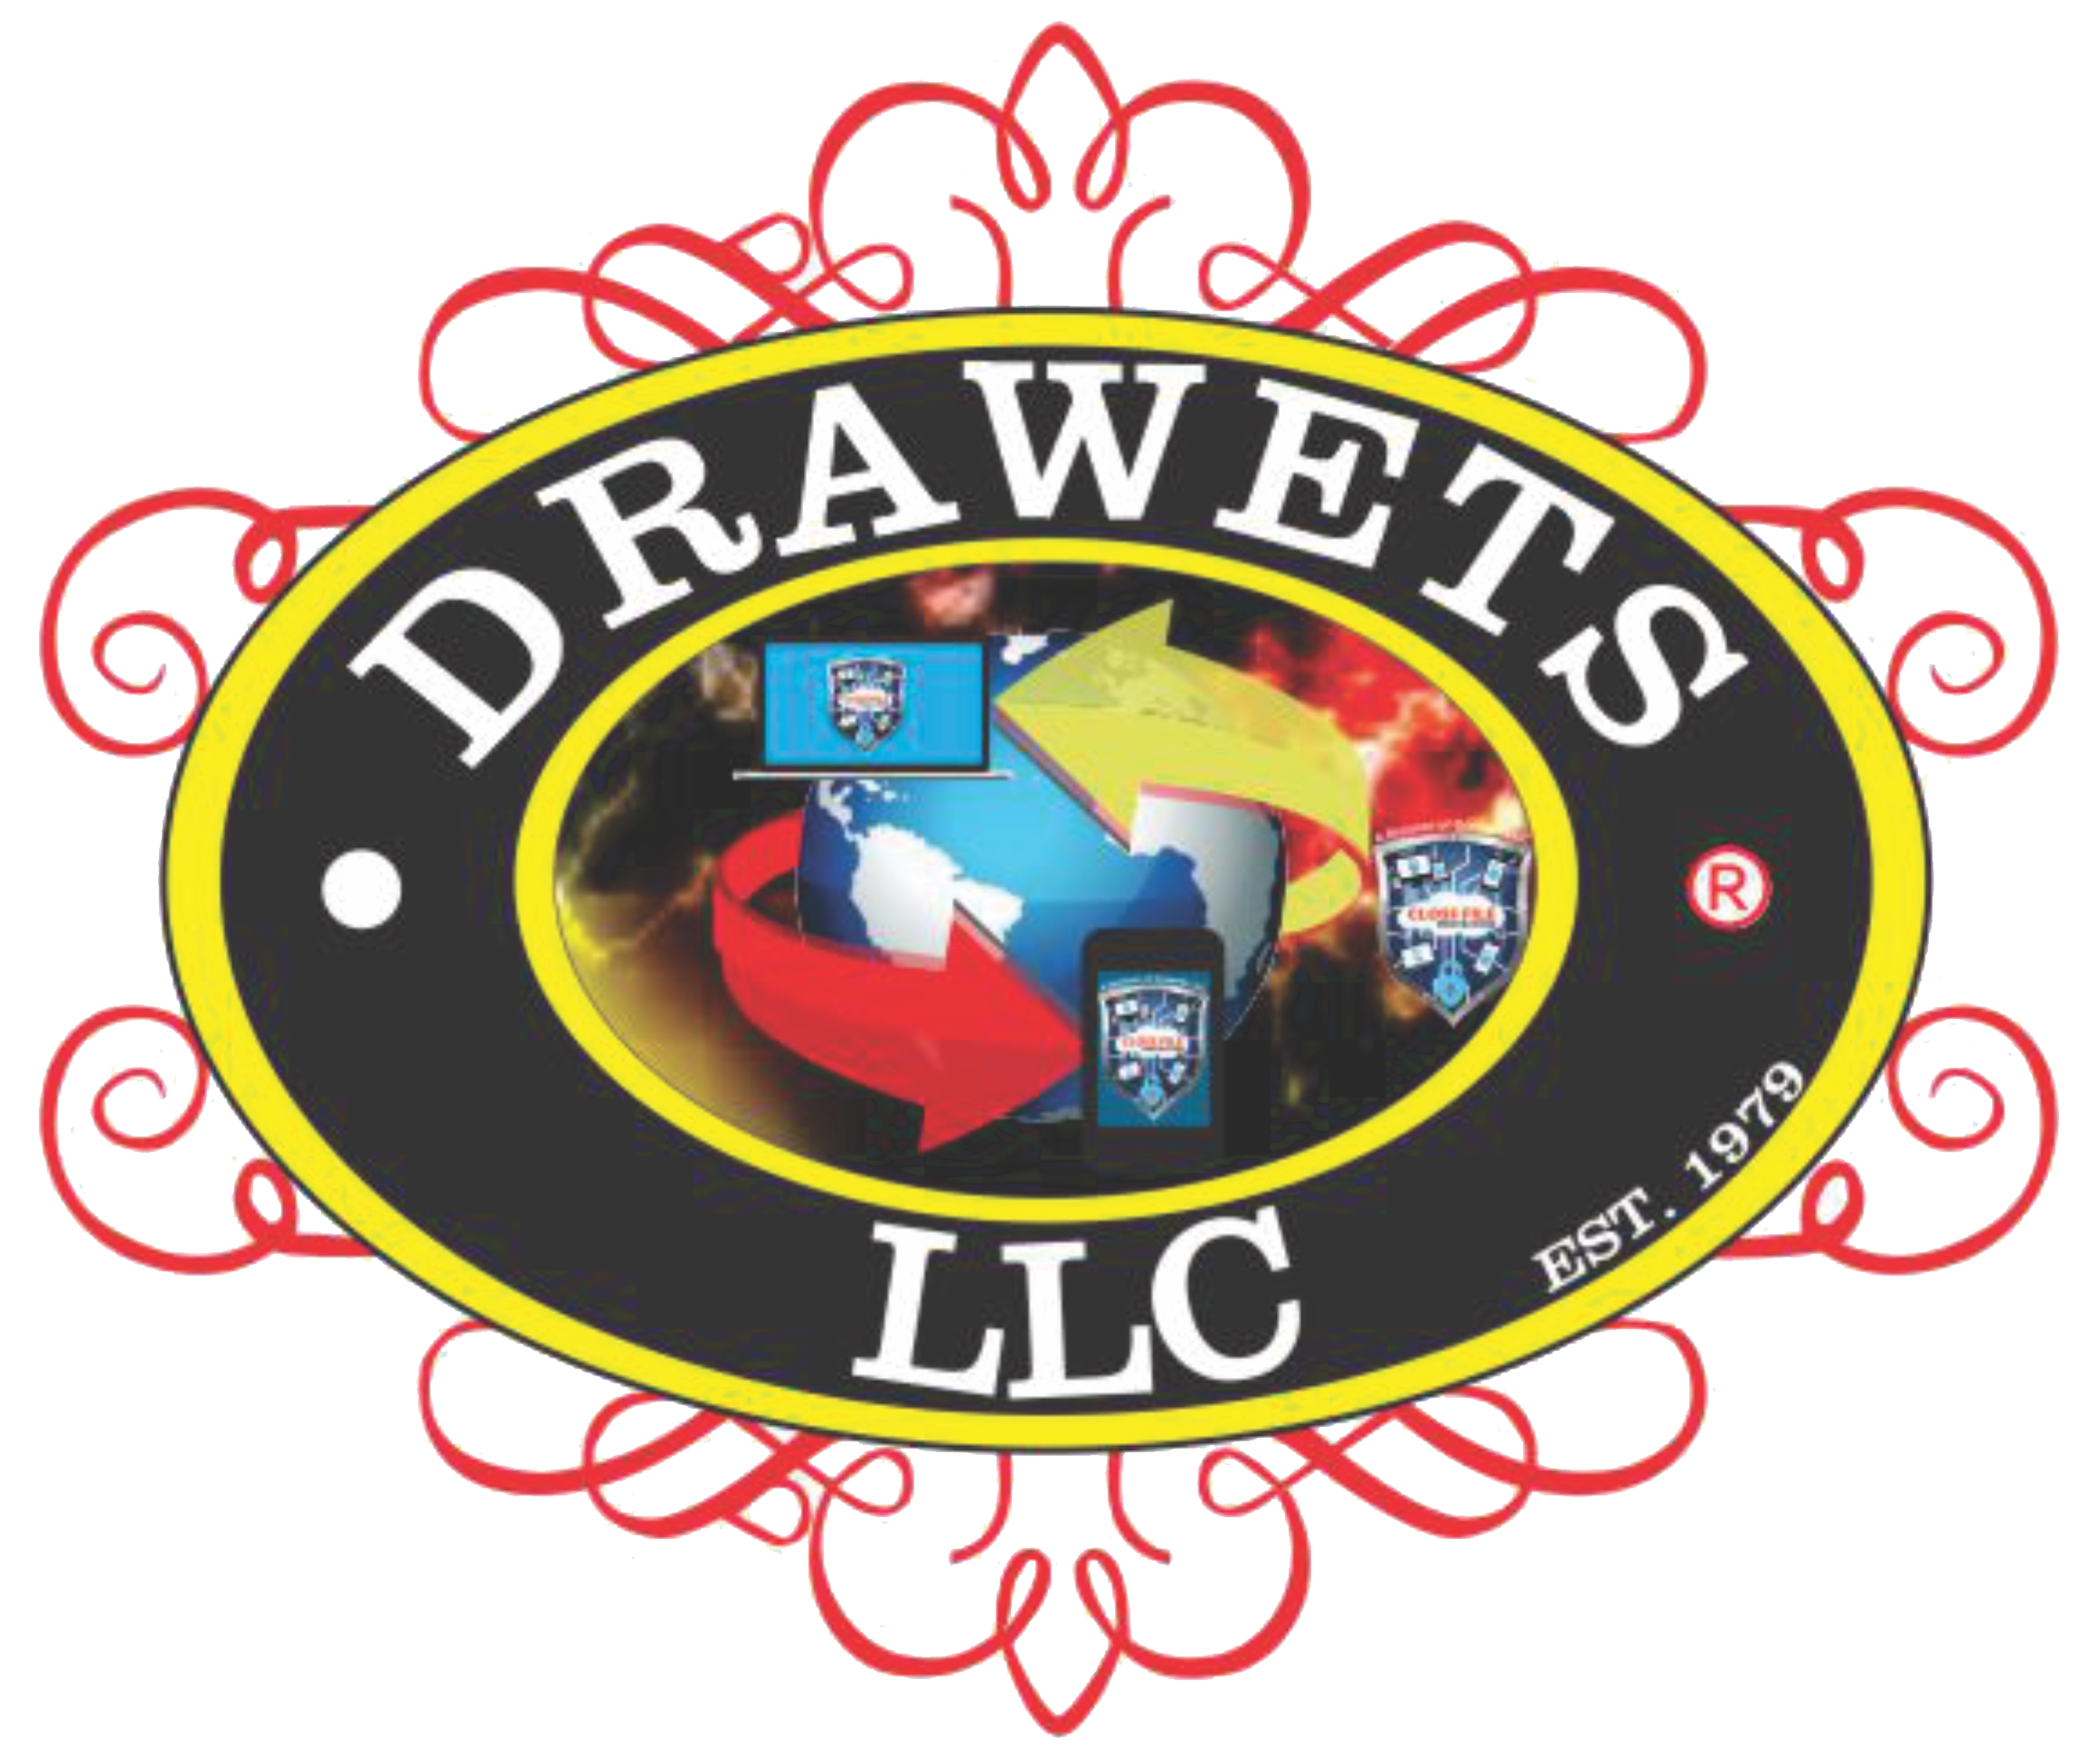 Drawets.com